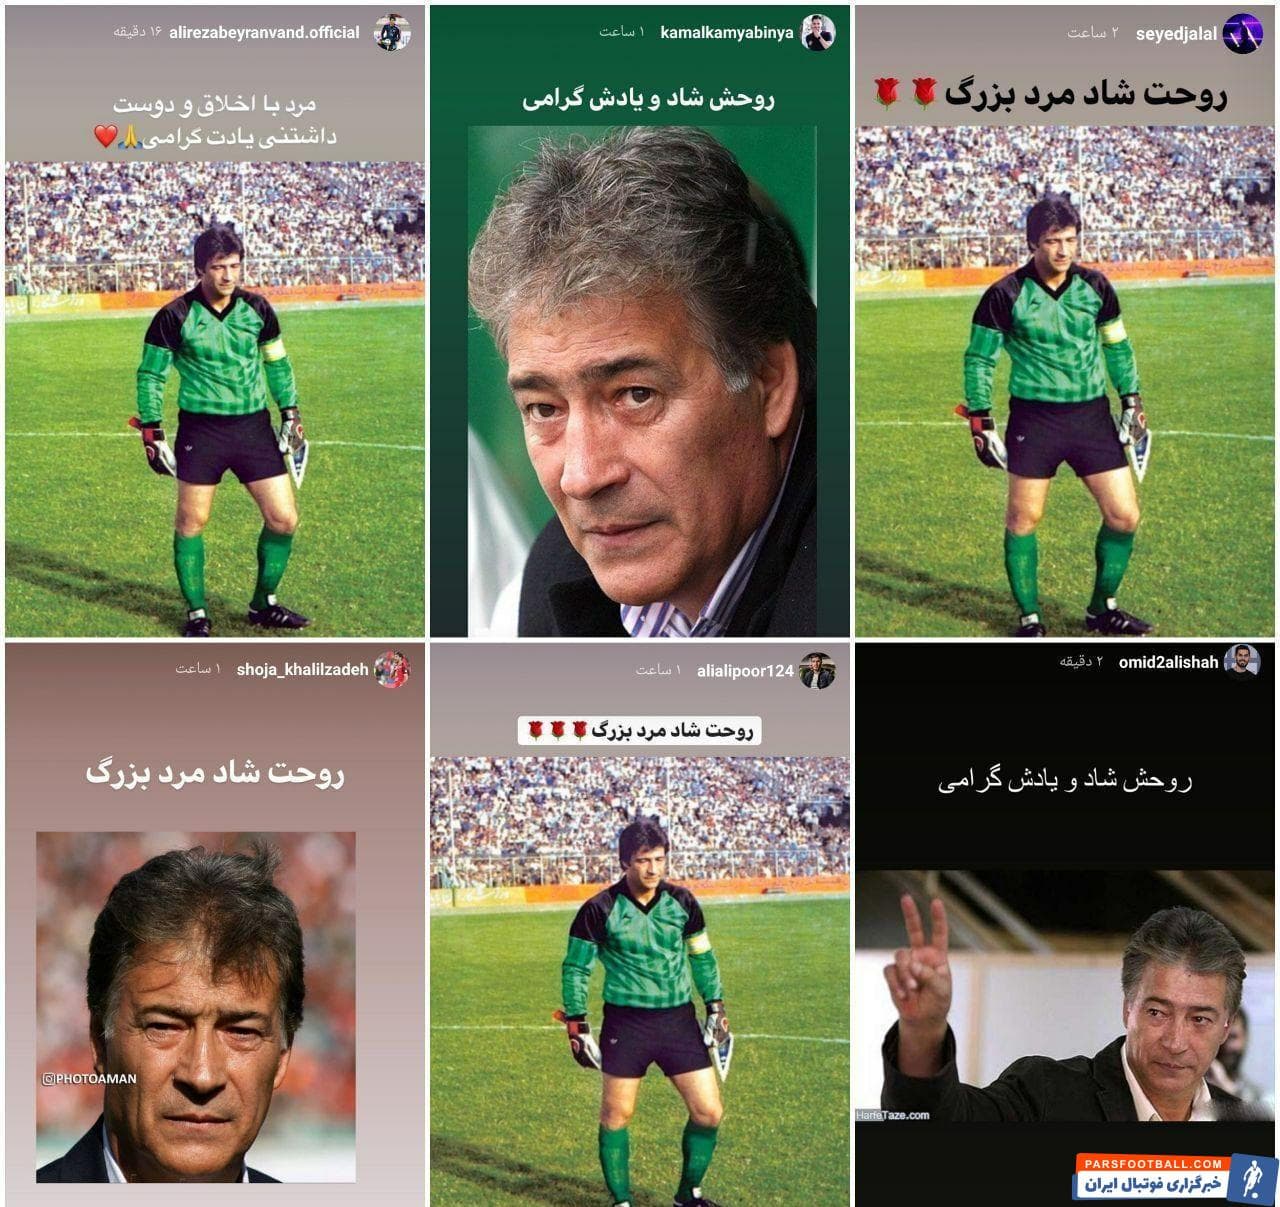 دیروز سالگرد درگذشت ناصر حجازی اسطوره استقلال بود و بازیکنان پرسپولیس برای ادای احترام به این پیشکسوت فوتبال، تصاویر او را در اینستاگرام منتشر کردند.